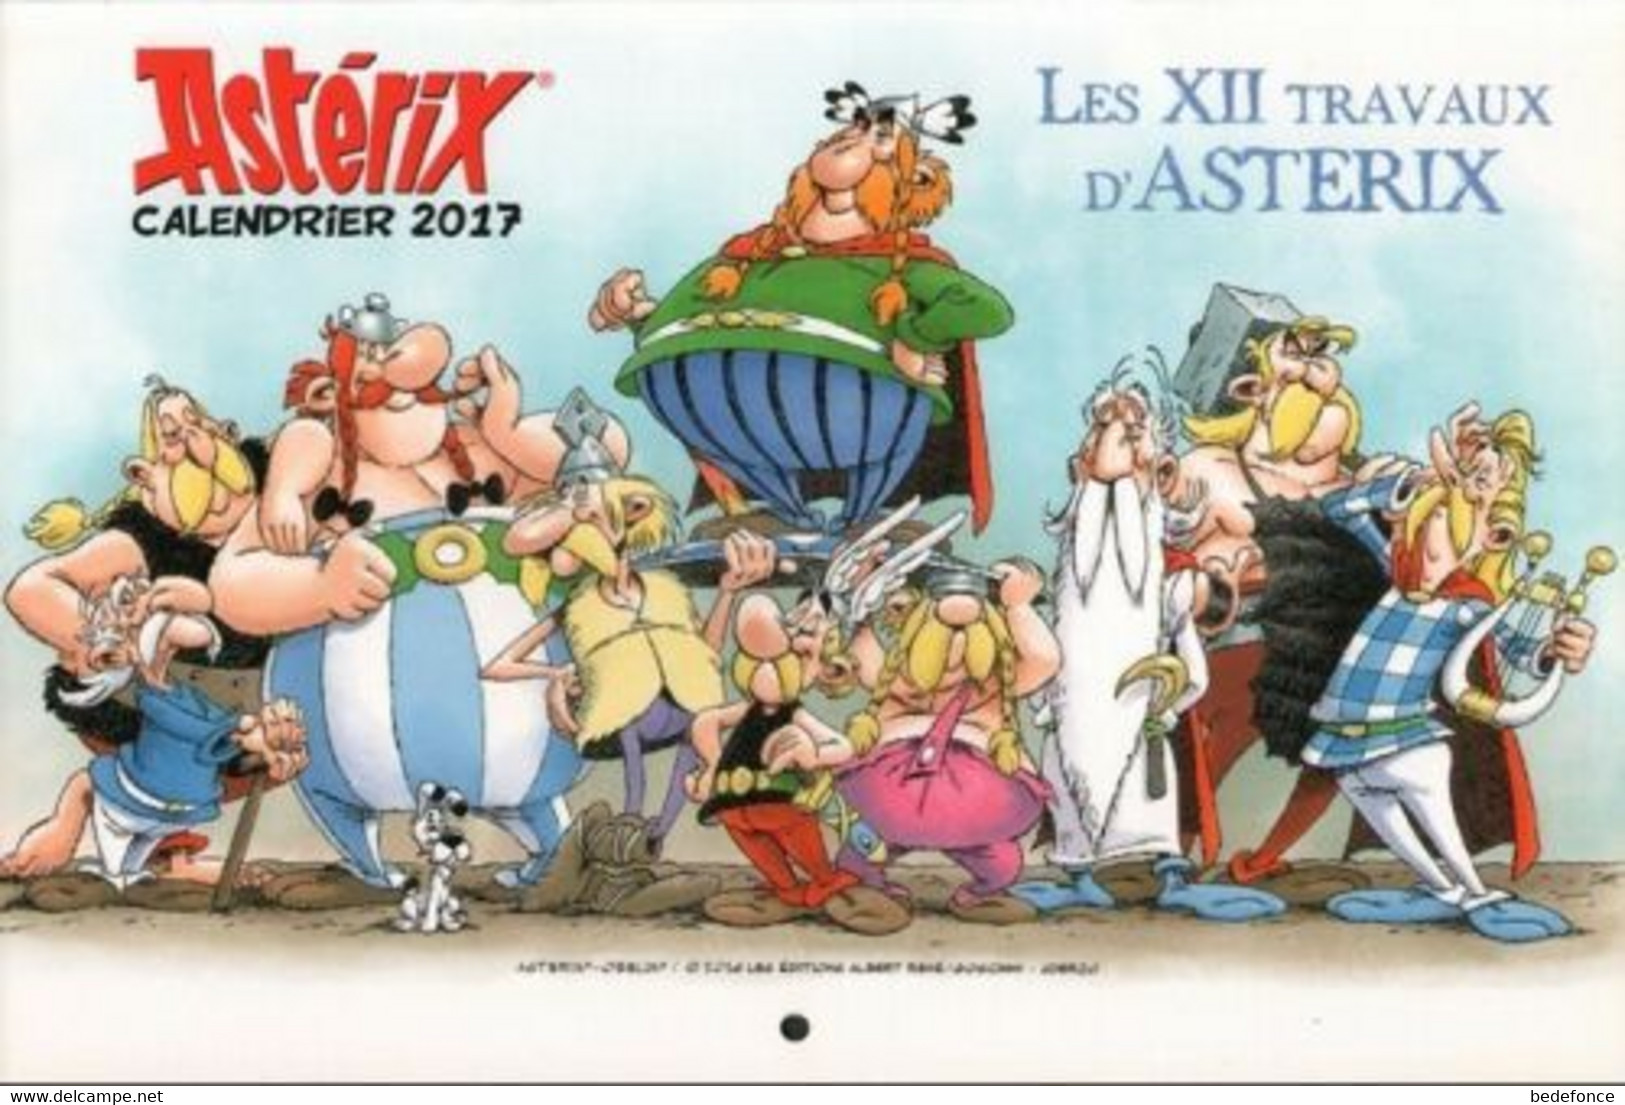 Astérix - Calendrier 2017 - Les XII Travaux D'Astérix - Goscinny Et Uderzo - Agende & Calendari